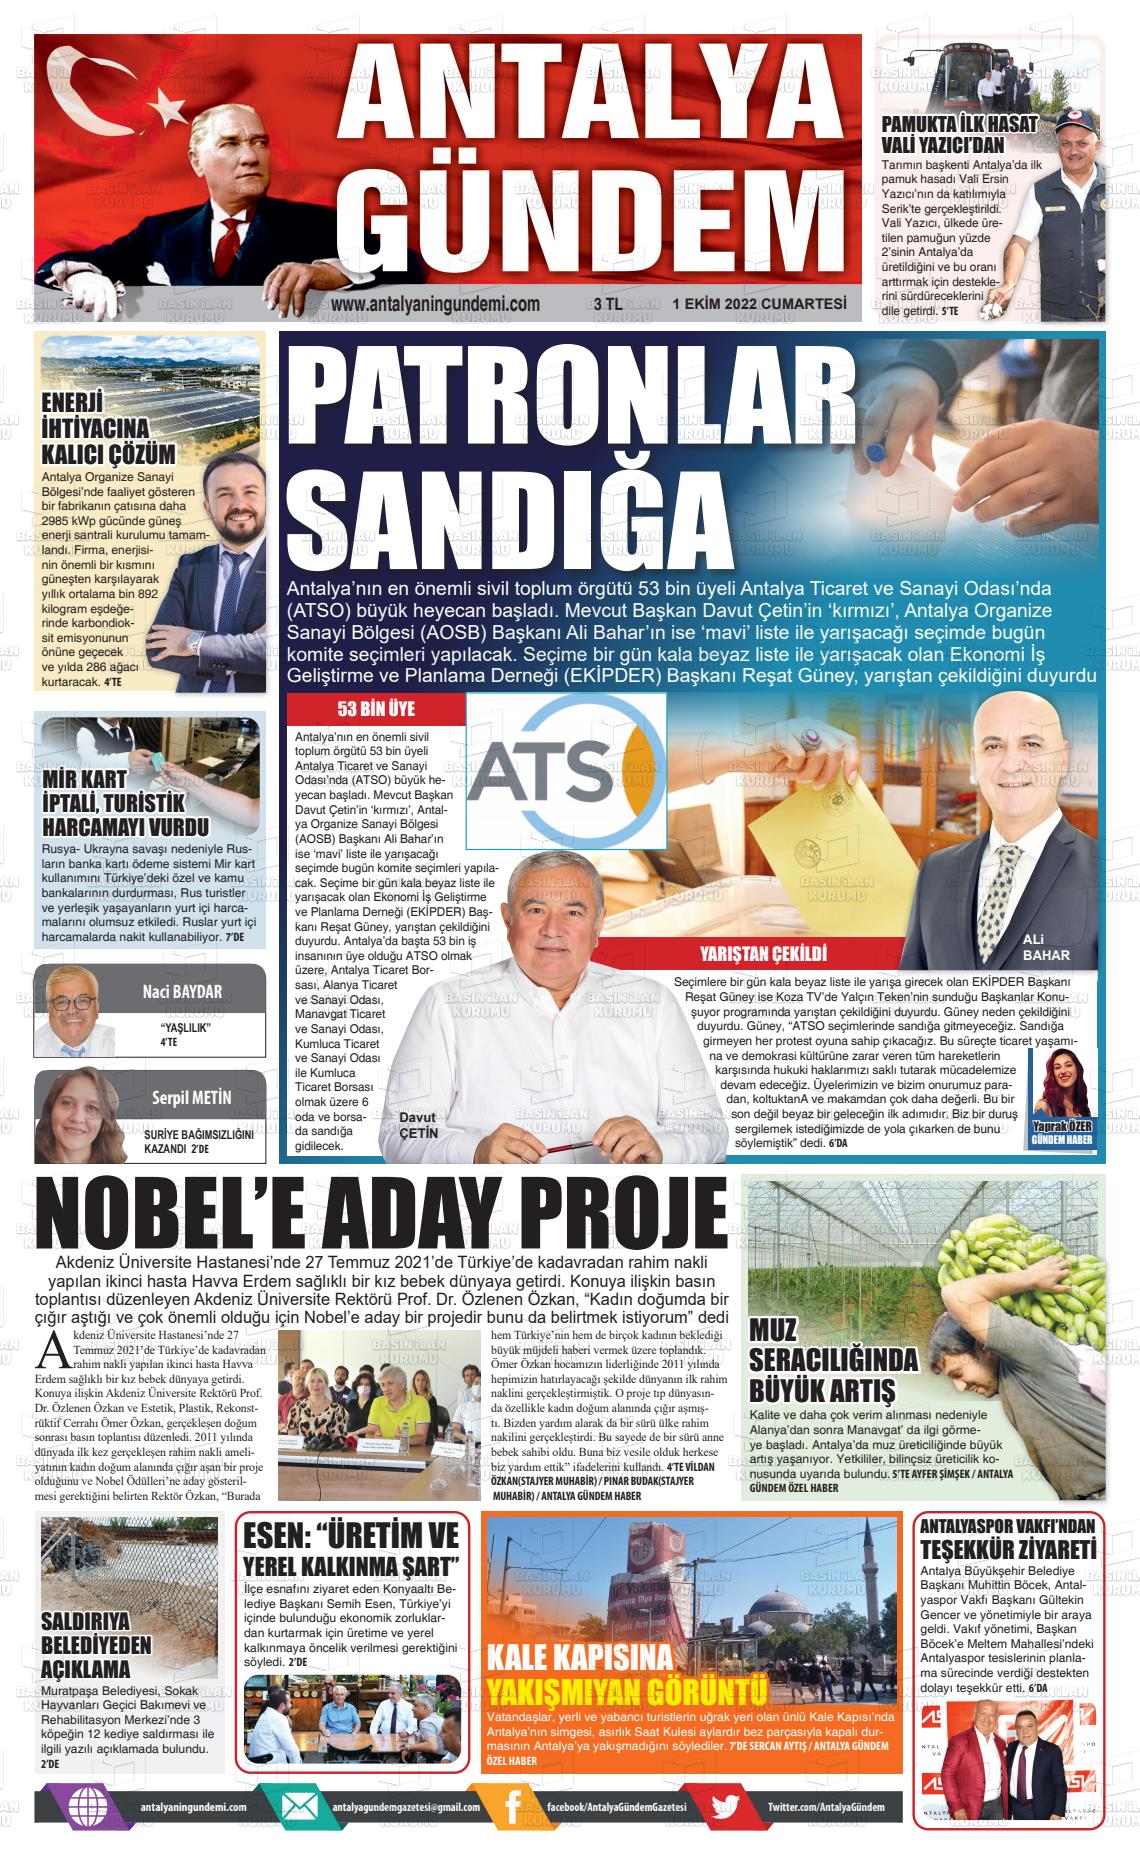 01 Ekim 2022 Antalya'nın Gündemi Gazete Manşeti